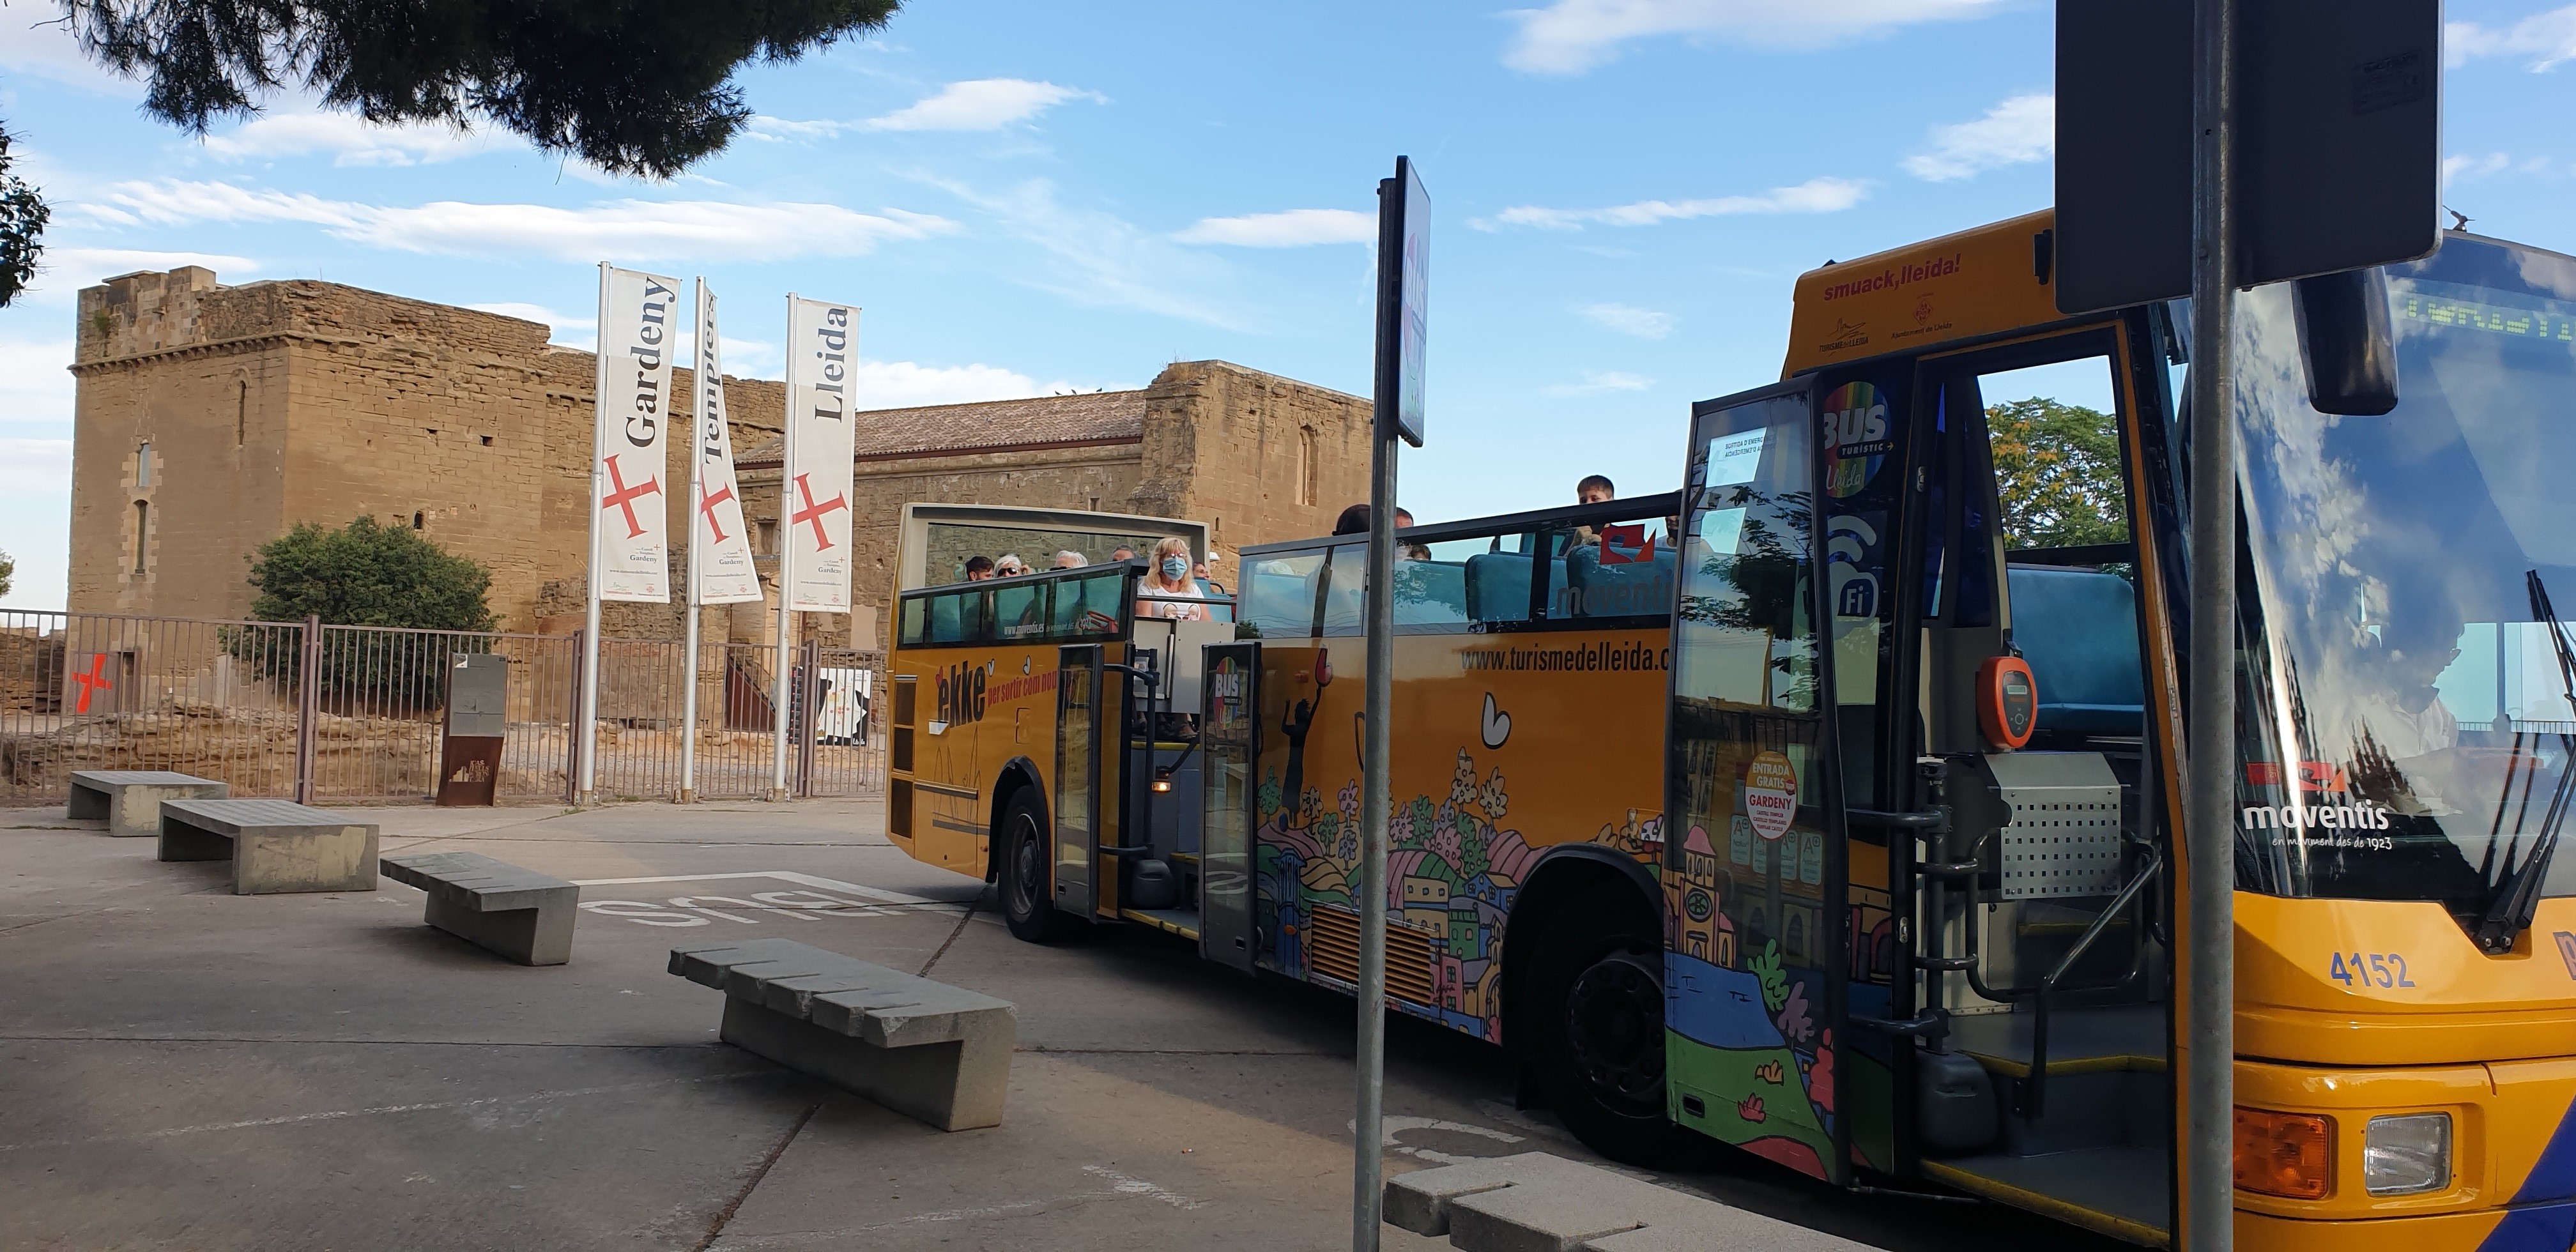 La temporada d’estiu del Bus Turístic de Lleida comença per Sant Joan. El servei uneix els dos turons patrimonials de la ciutat: el turó de la Seu Vella i el turó de Gardeny